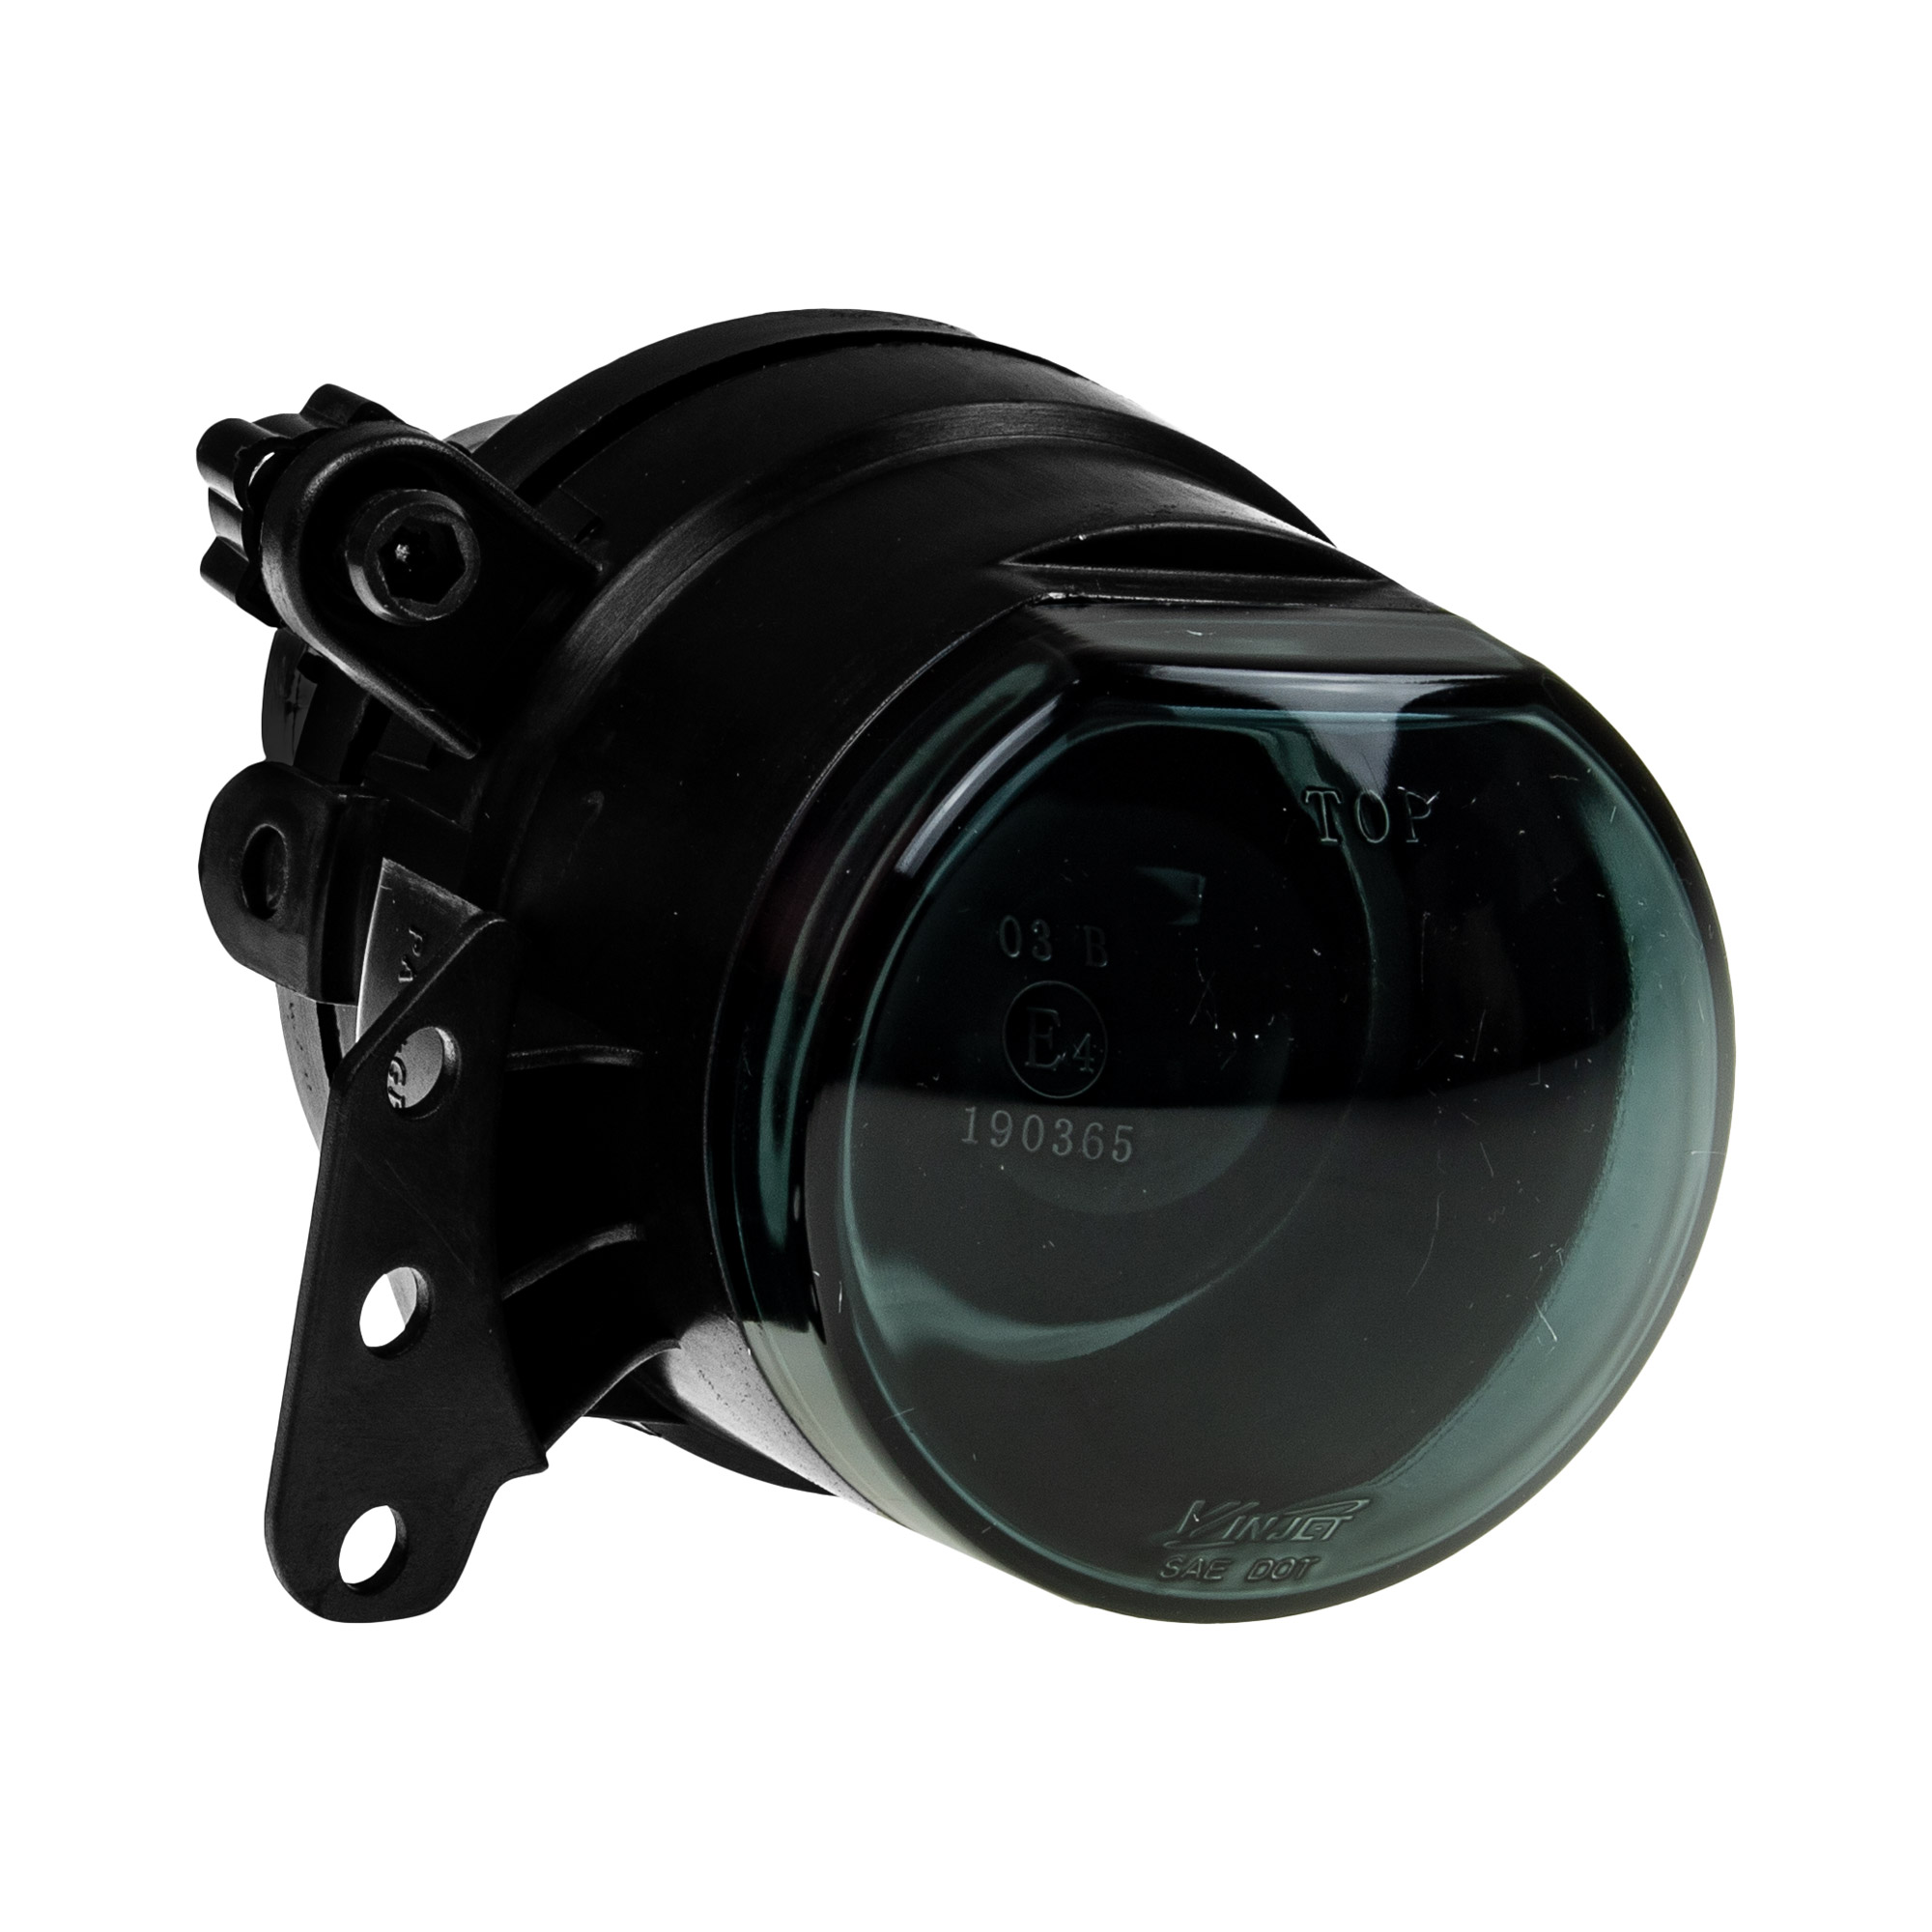 Projektor DE Nebelscheinwerfer Set smoke schwarz für BMW E60 E61 E90 E91 E92 93